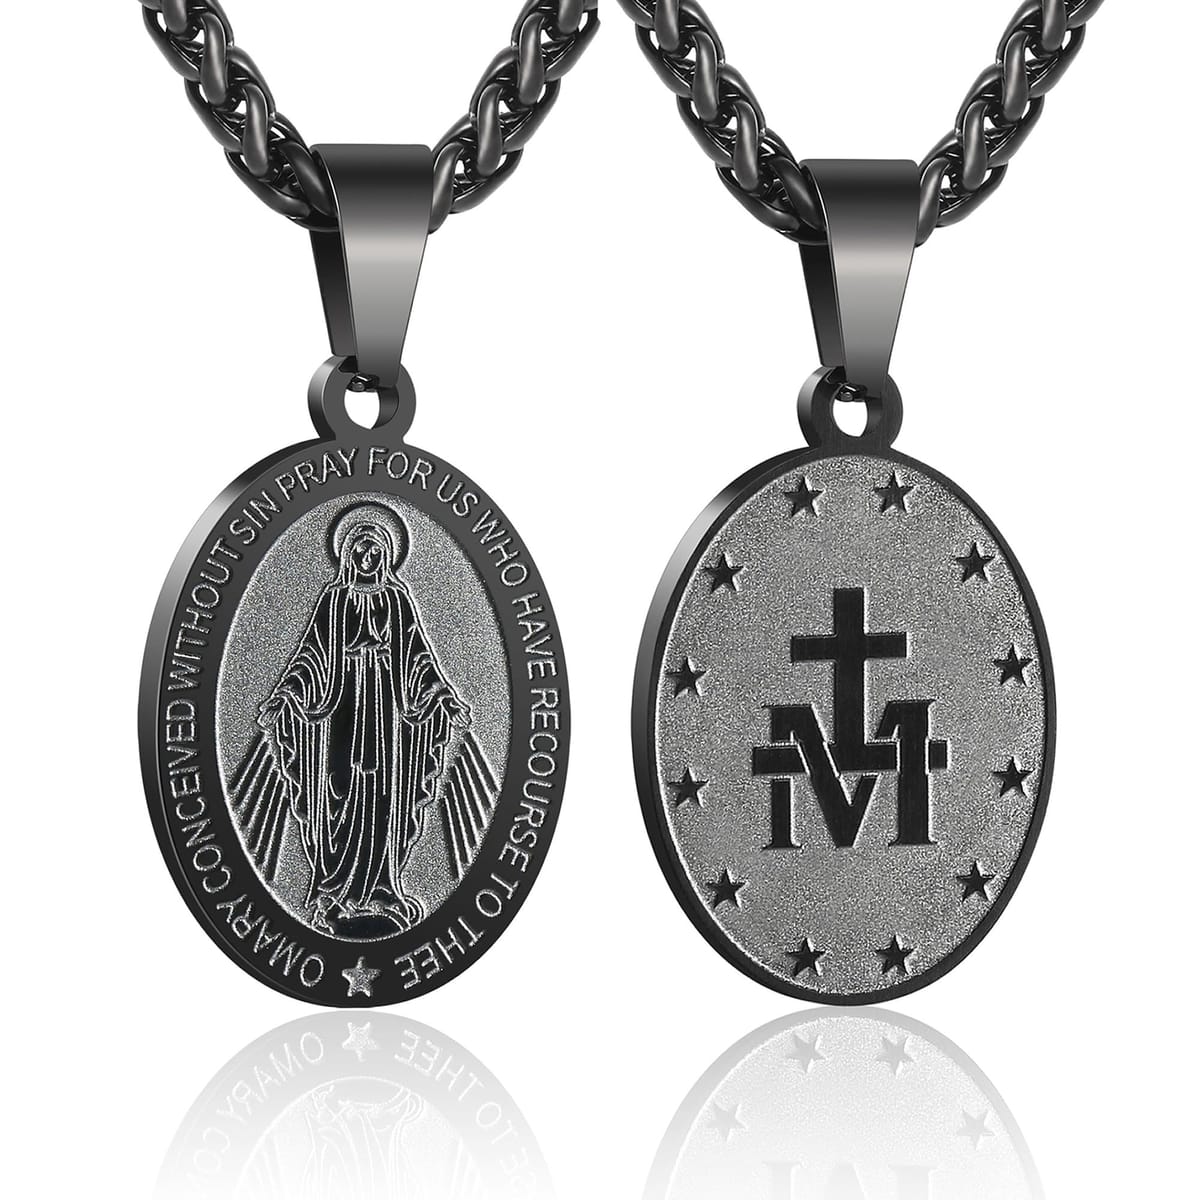 RS 聖母マリアネックレス メンズ 奇跡のメダル ステンレススチール 神の母 ペンダント De La Virgen Maria メダリオン 聖マリアチャーム, ステンレス鋼, 宝石なし